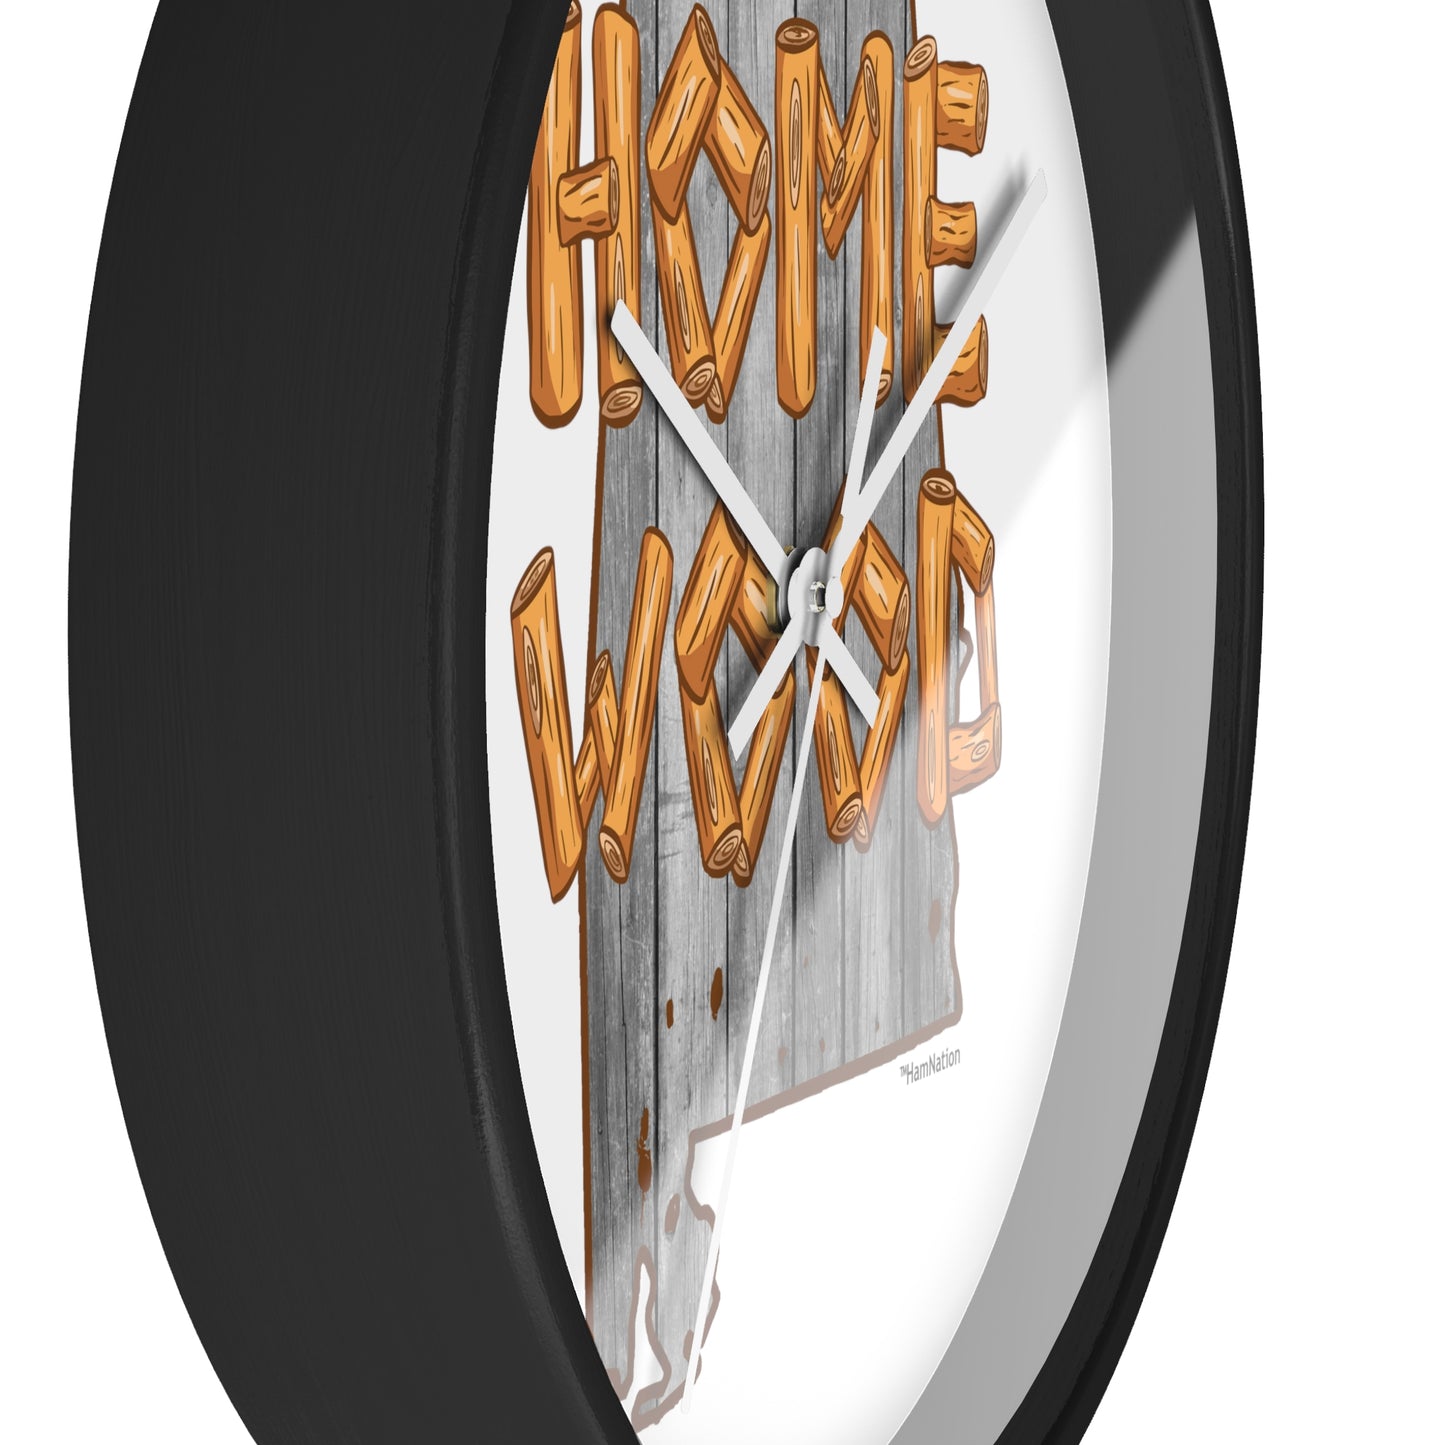 Homewood, AL Wall Mounted Clock